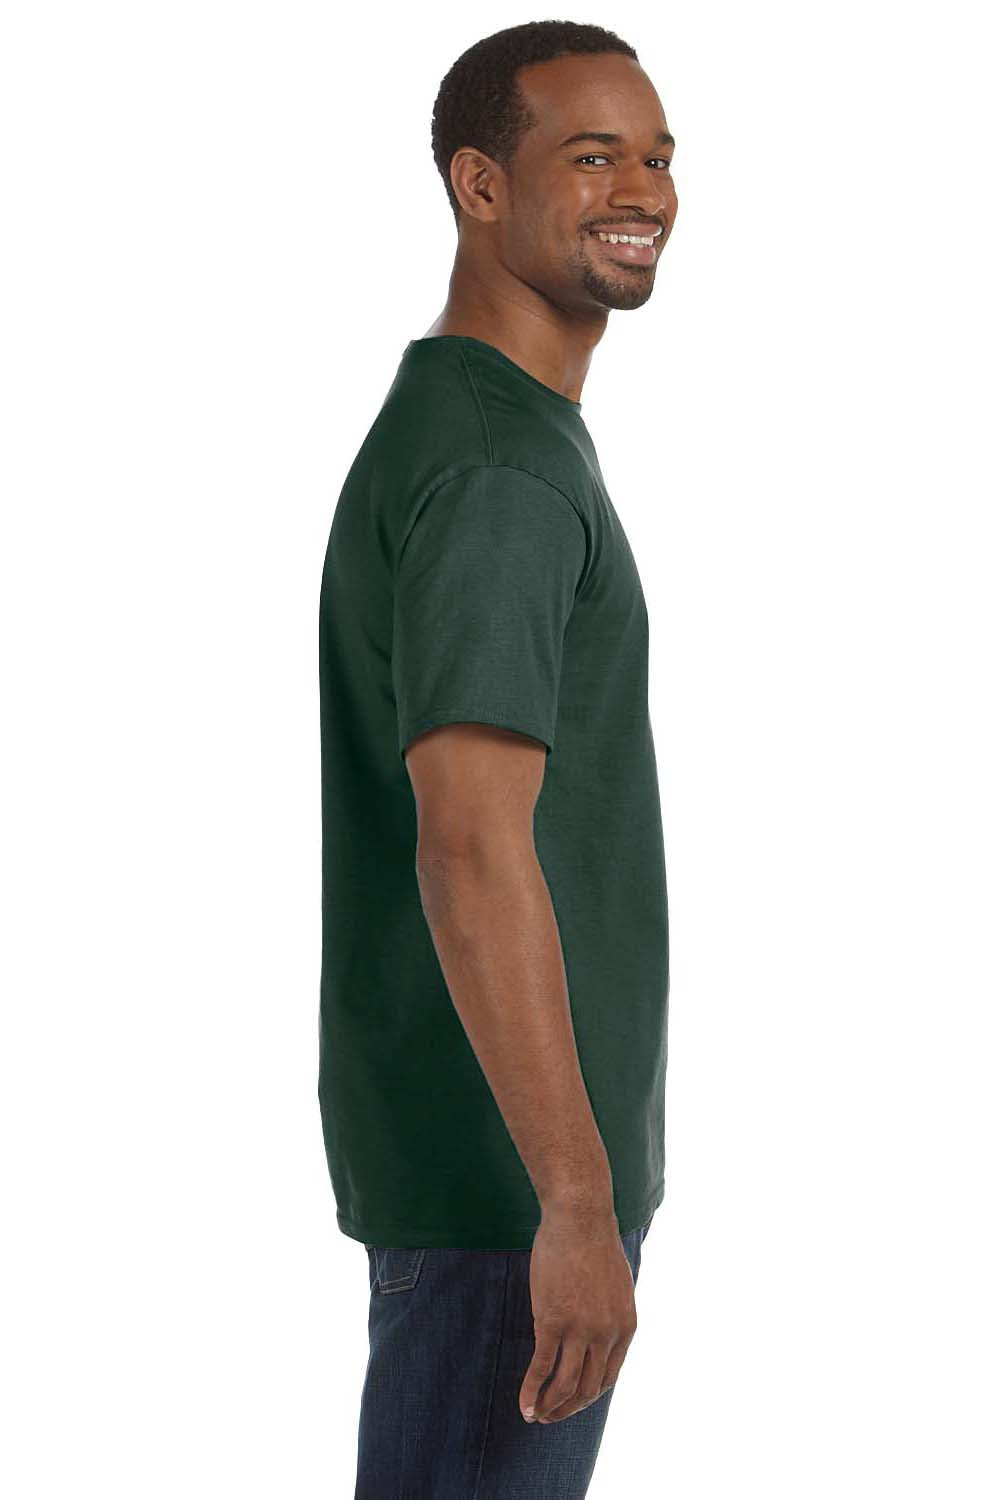 Jerzees 29M Mens Dri-Power Moisture Wicking Short Sleeve Crewneck T-Shirt Forest Green Side